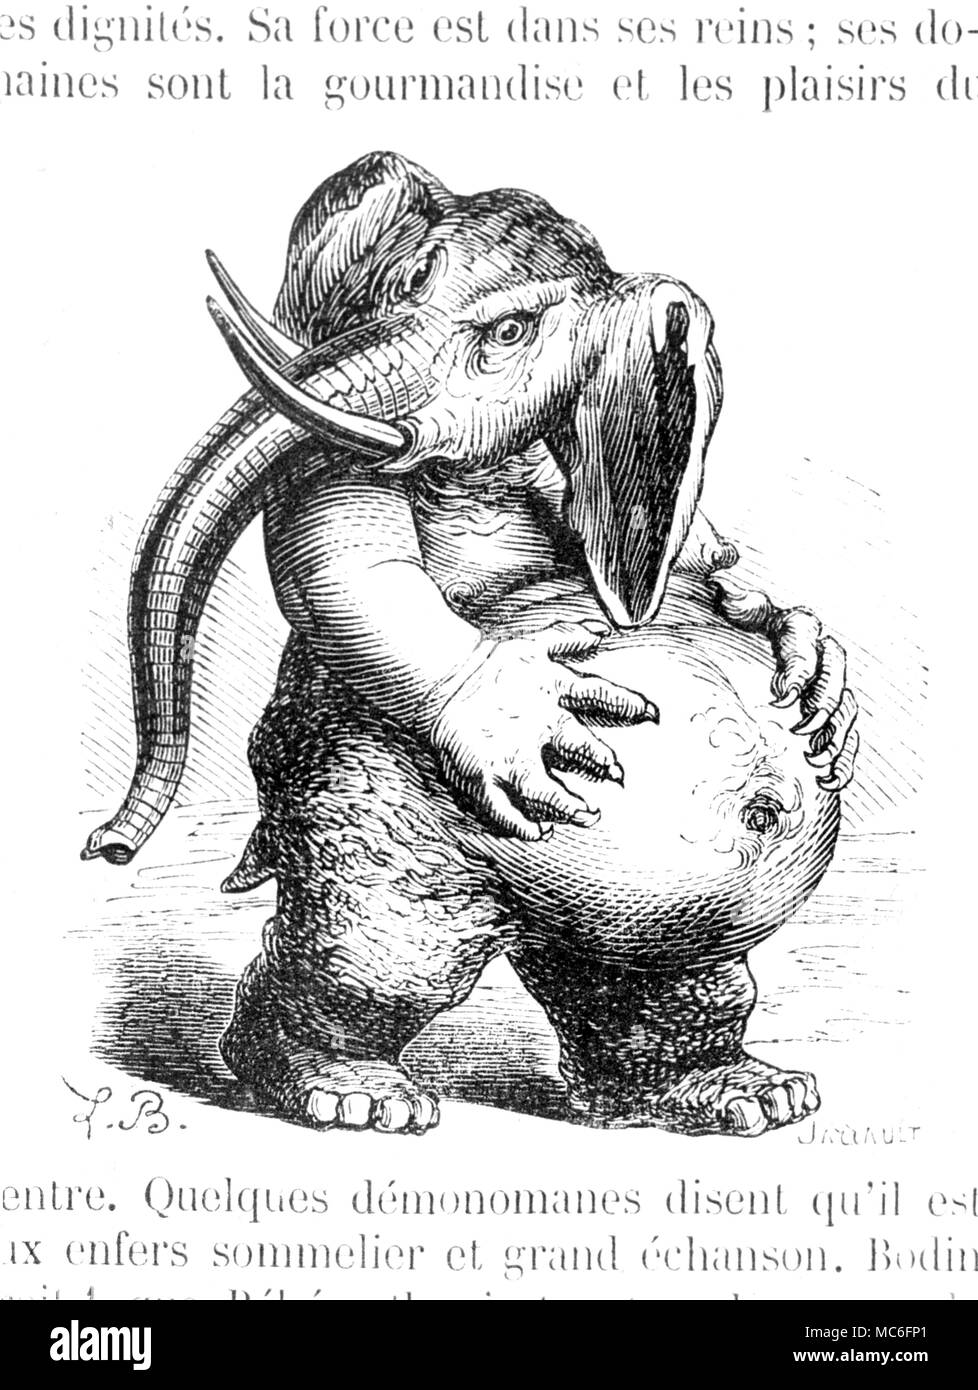 Behemoth, der Dämon der Völlerei, wie durch die journalistische occulist dargestellt, Collin de Plancy, in seinem Wörterbuch Infernal, 1863. Stockfoto